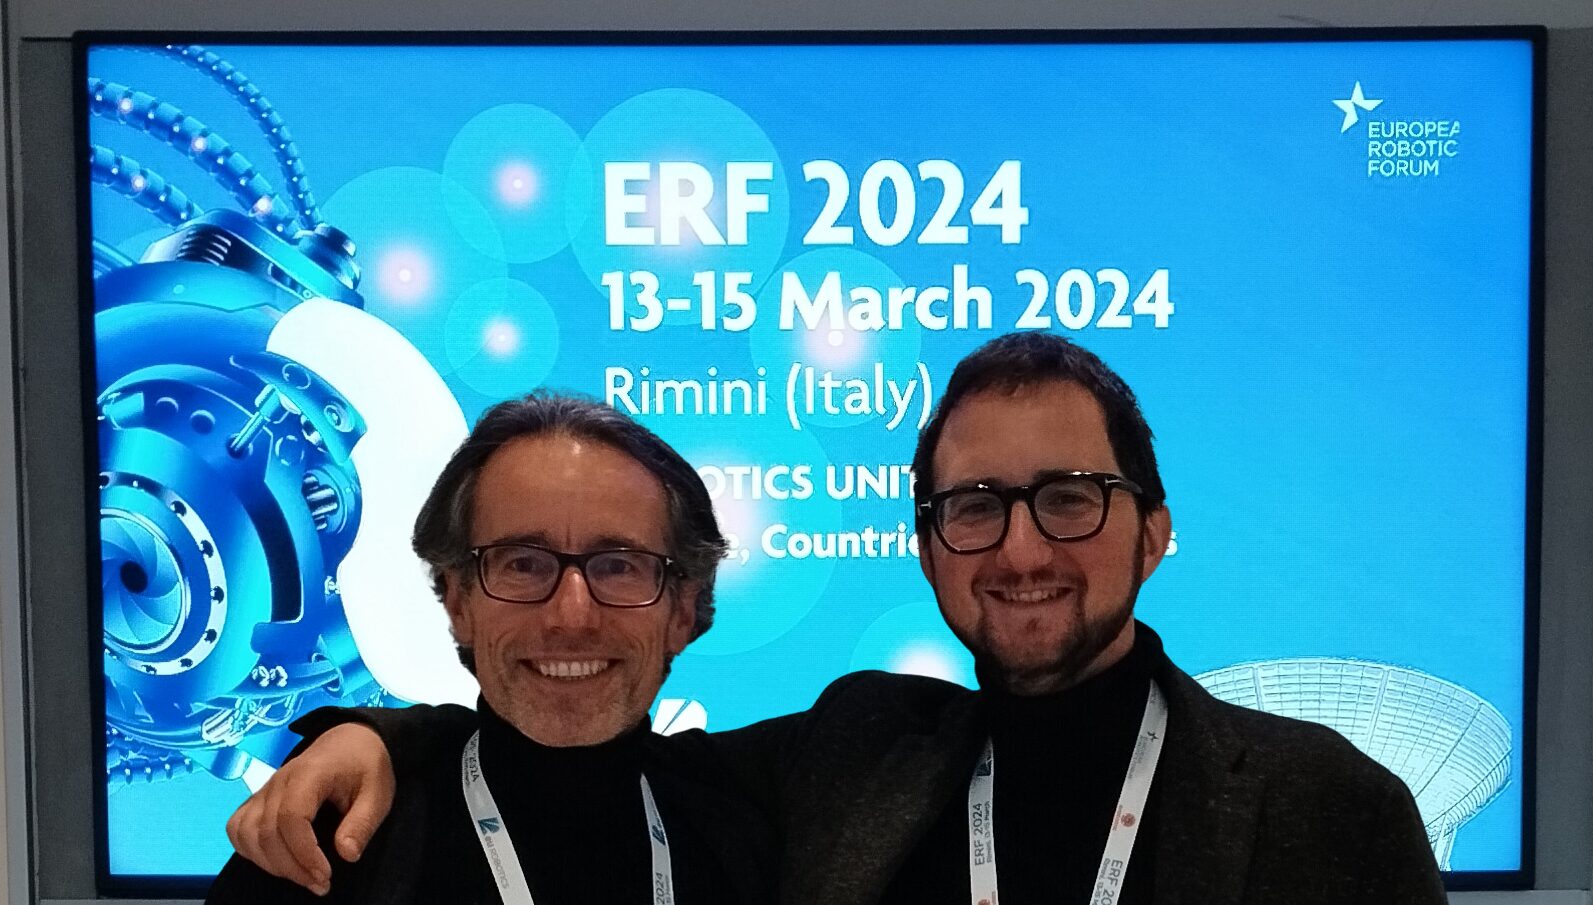 Back from the European Robotics Forum 2024 in Rimini